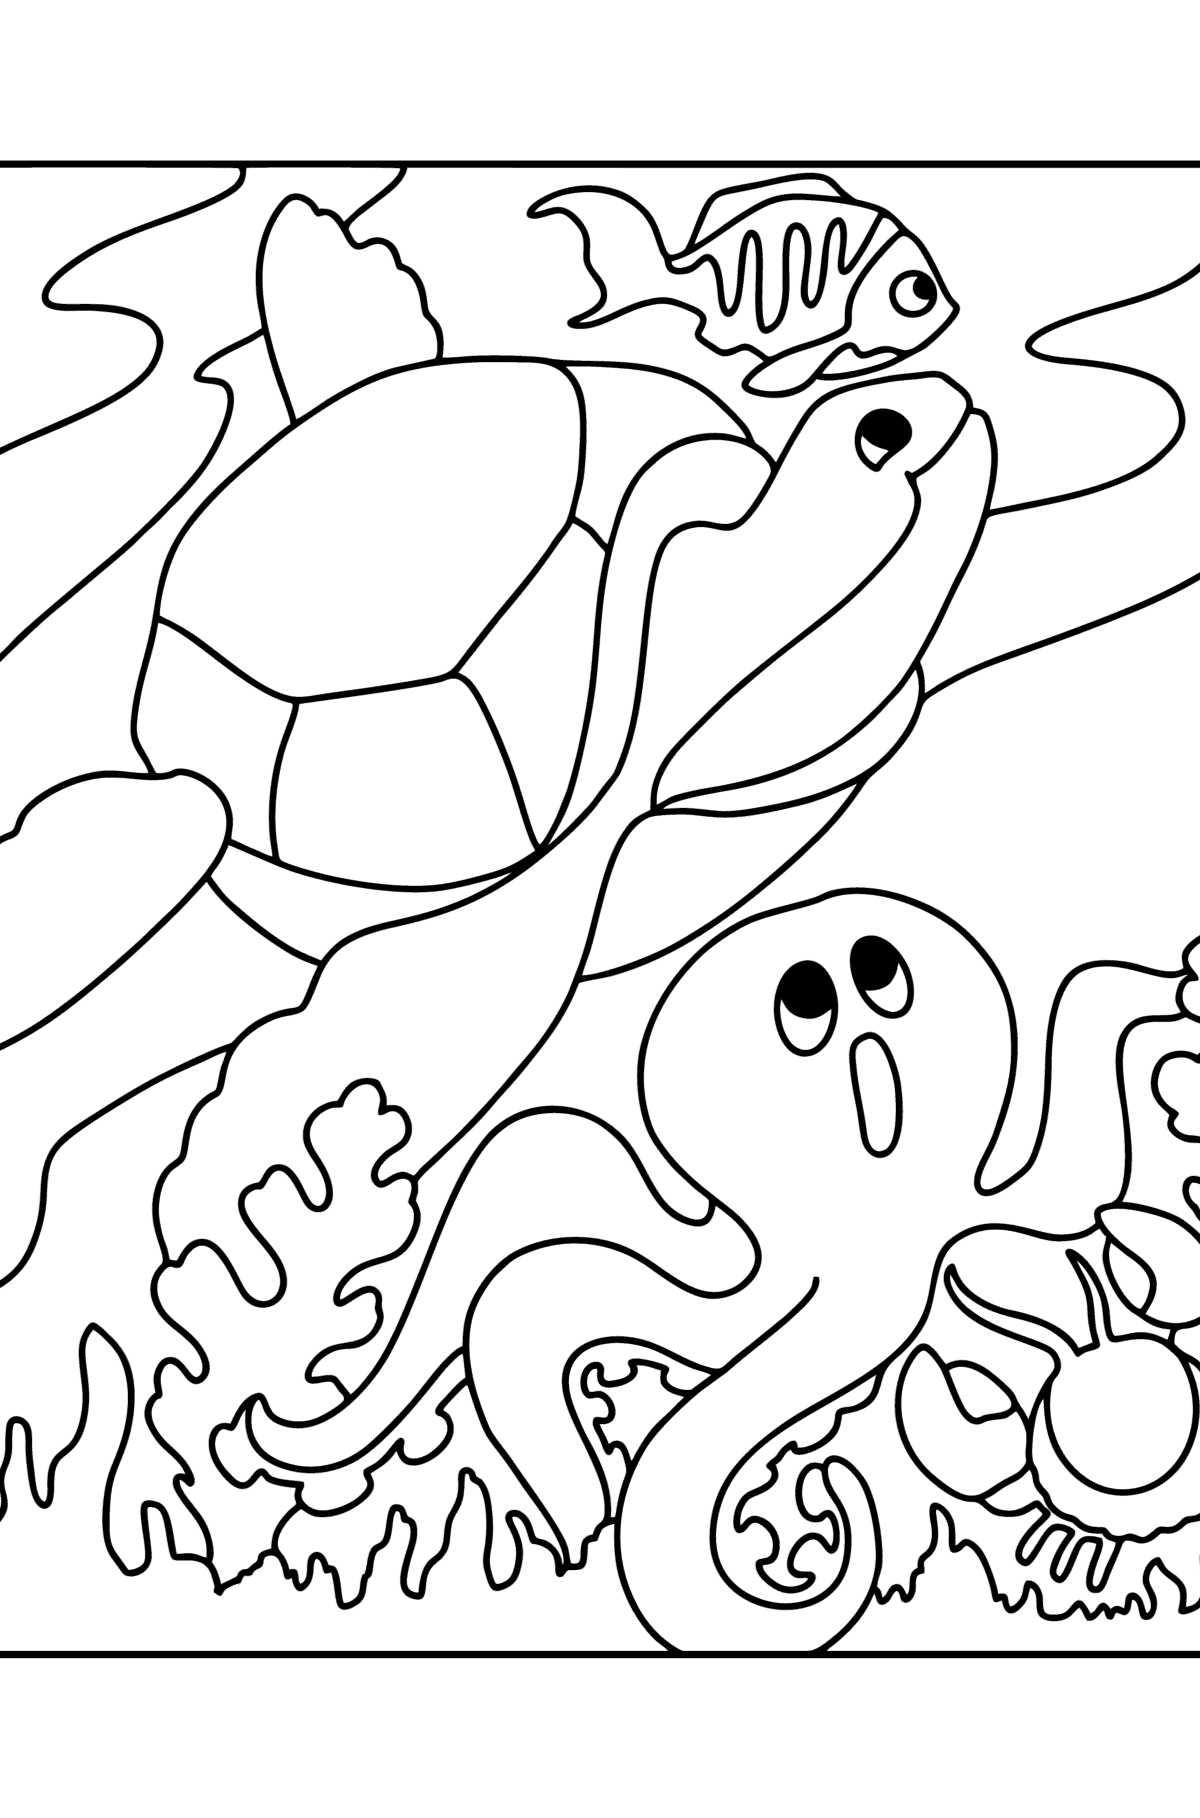 Tegning til fargelegging fisk, skilpadde, krabbe og blekksprut - Tegninger til fargelegging for barn